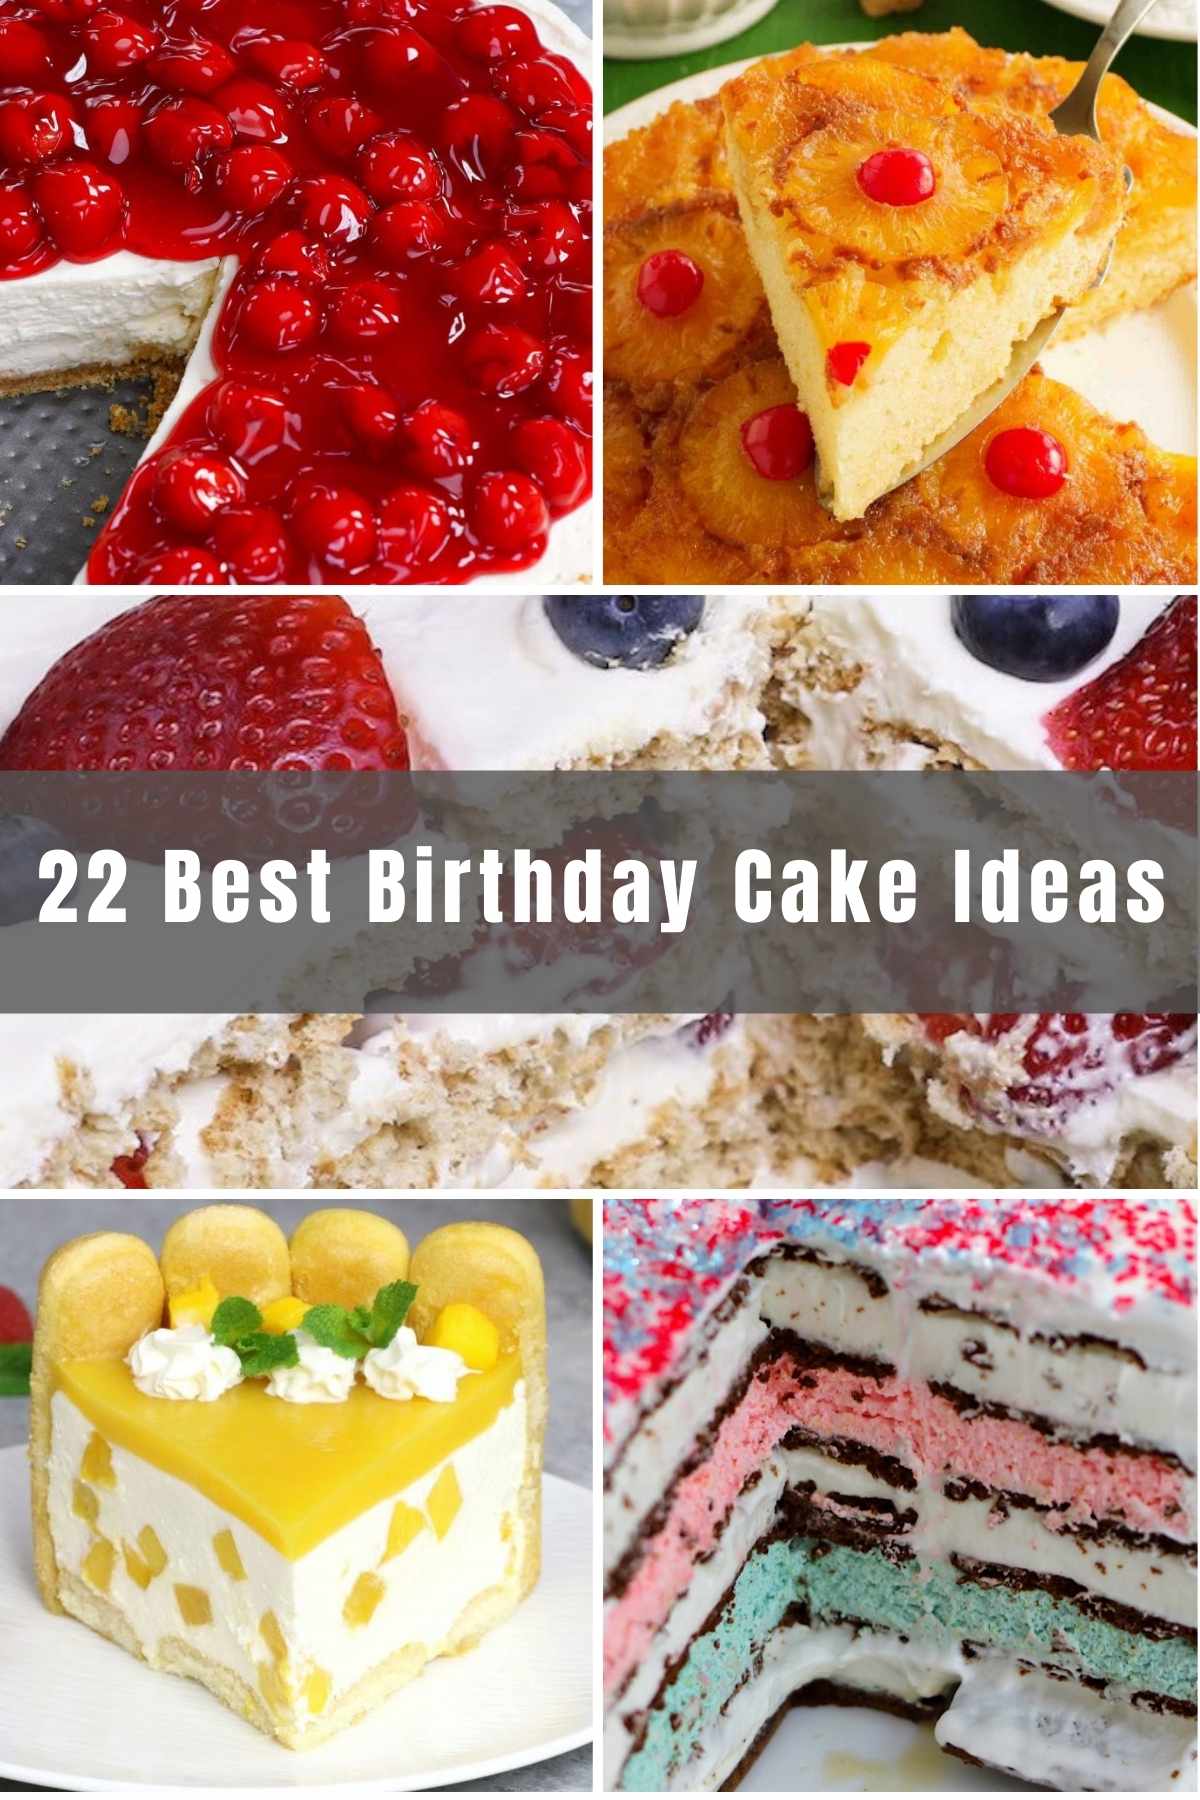 Fun Birthday Cake Ideas for Men and Women - IzzyCooking